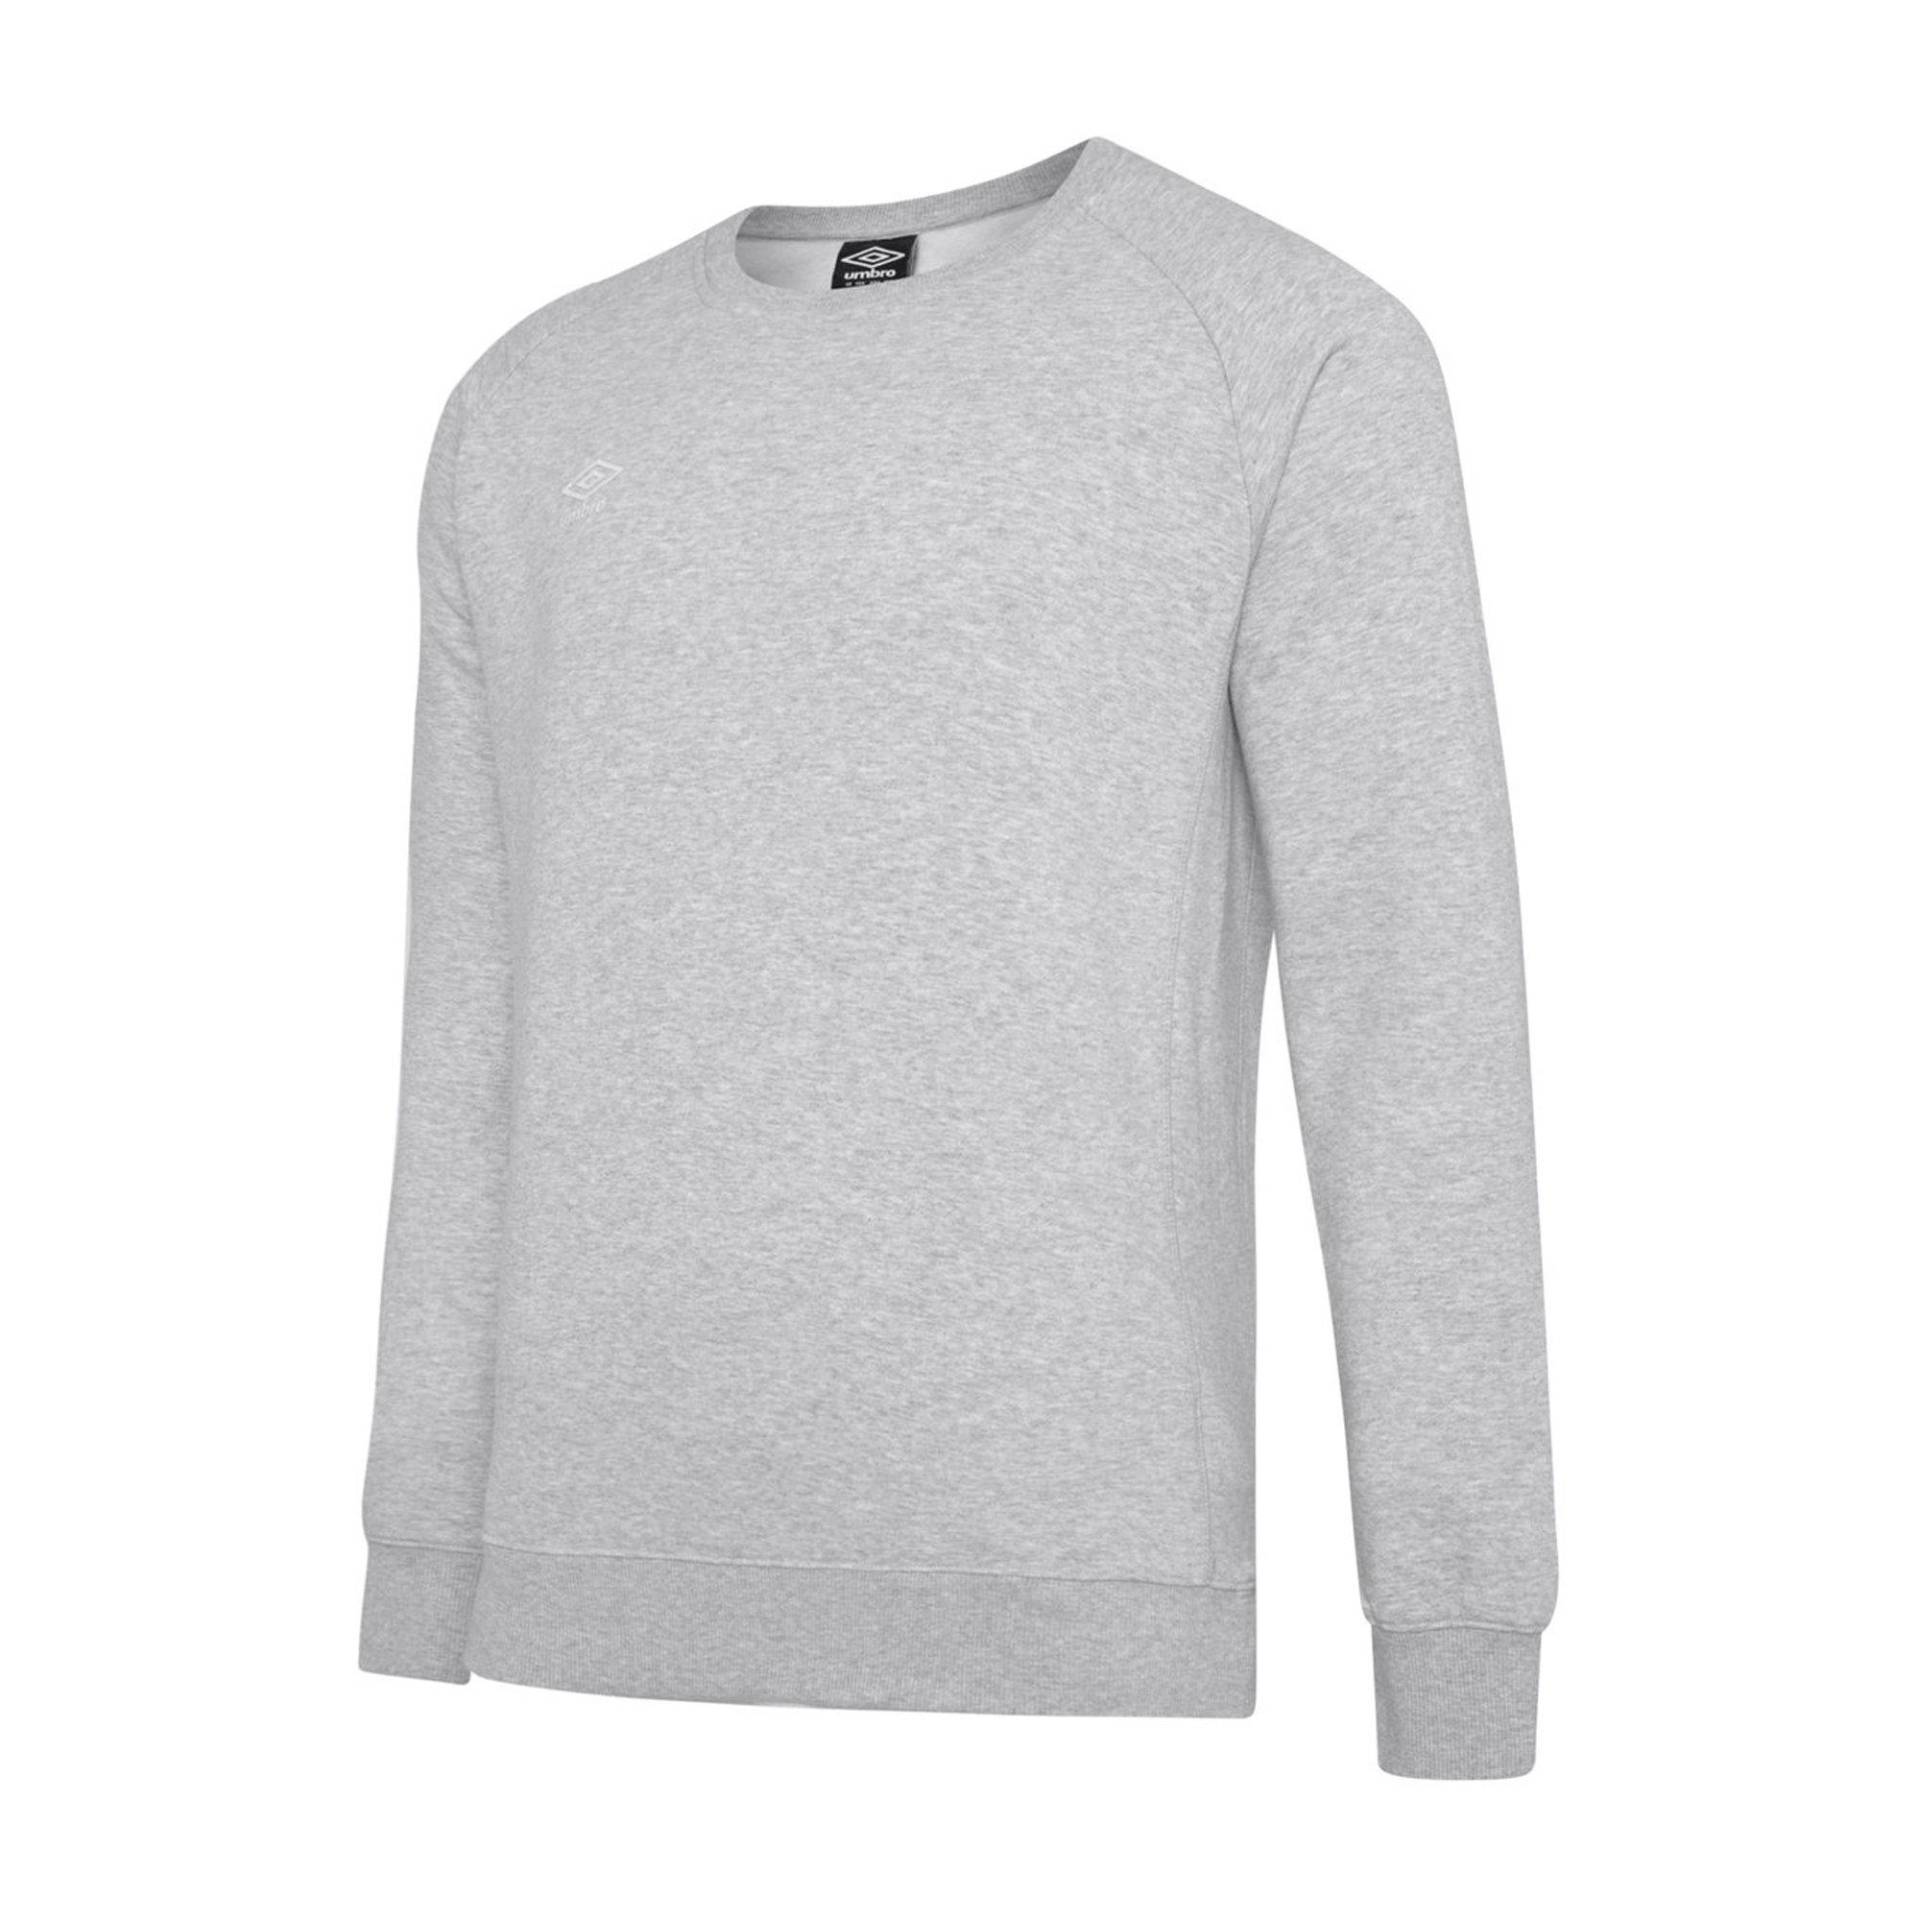 Club Leisure Sweatshirt Herren Grau 4XL von Umbro